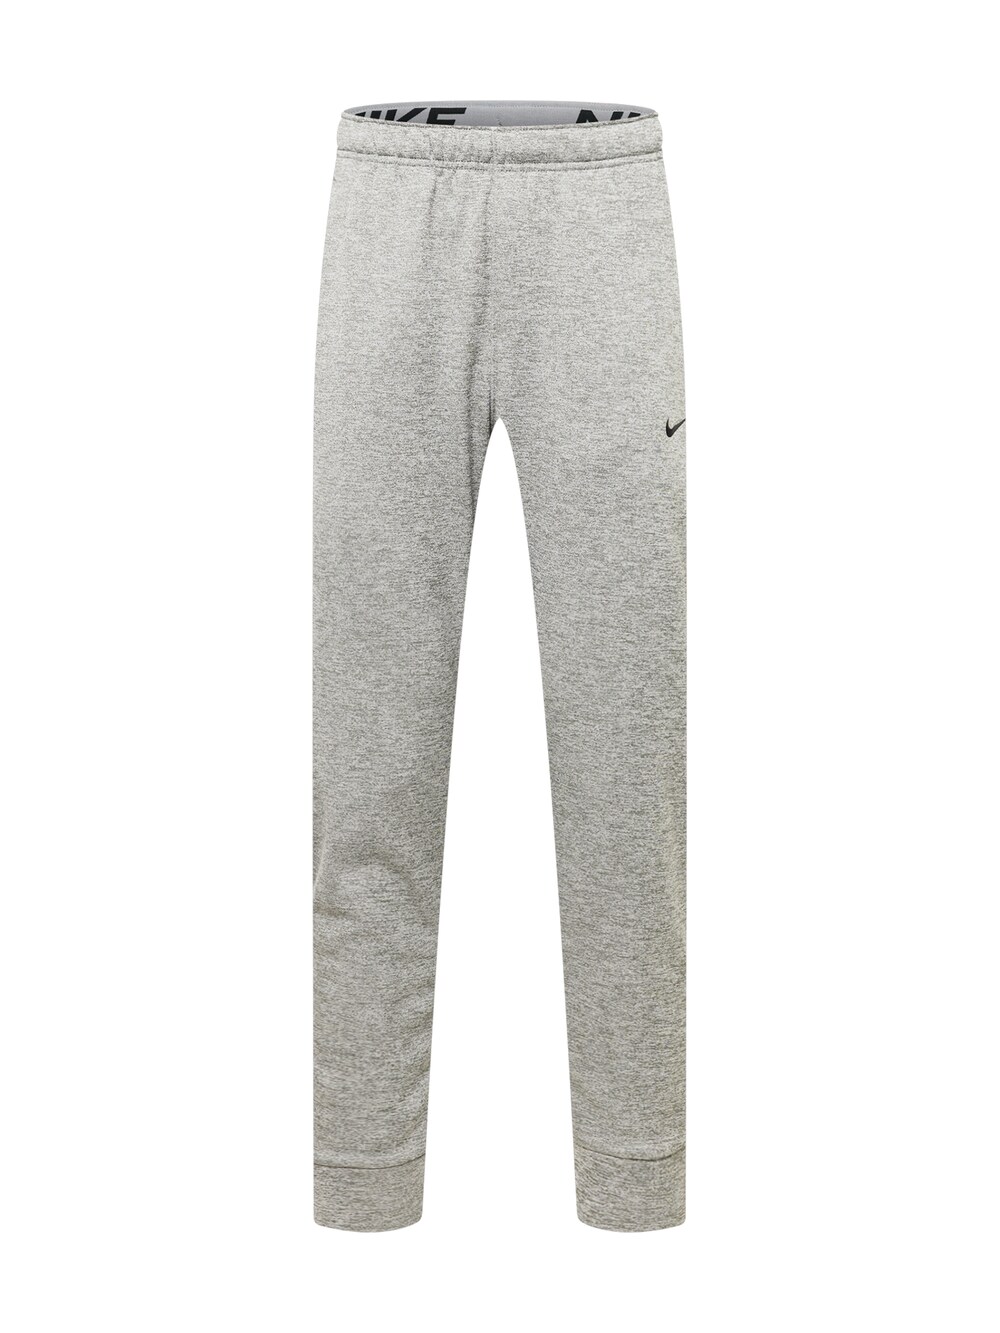 Зауженные тренировочные брюки Nike, серый